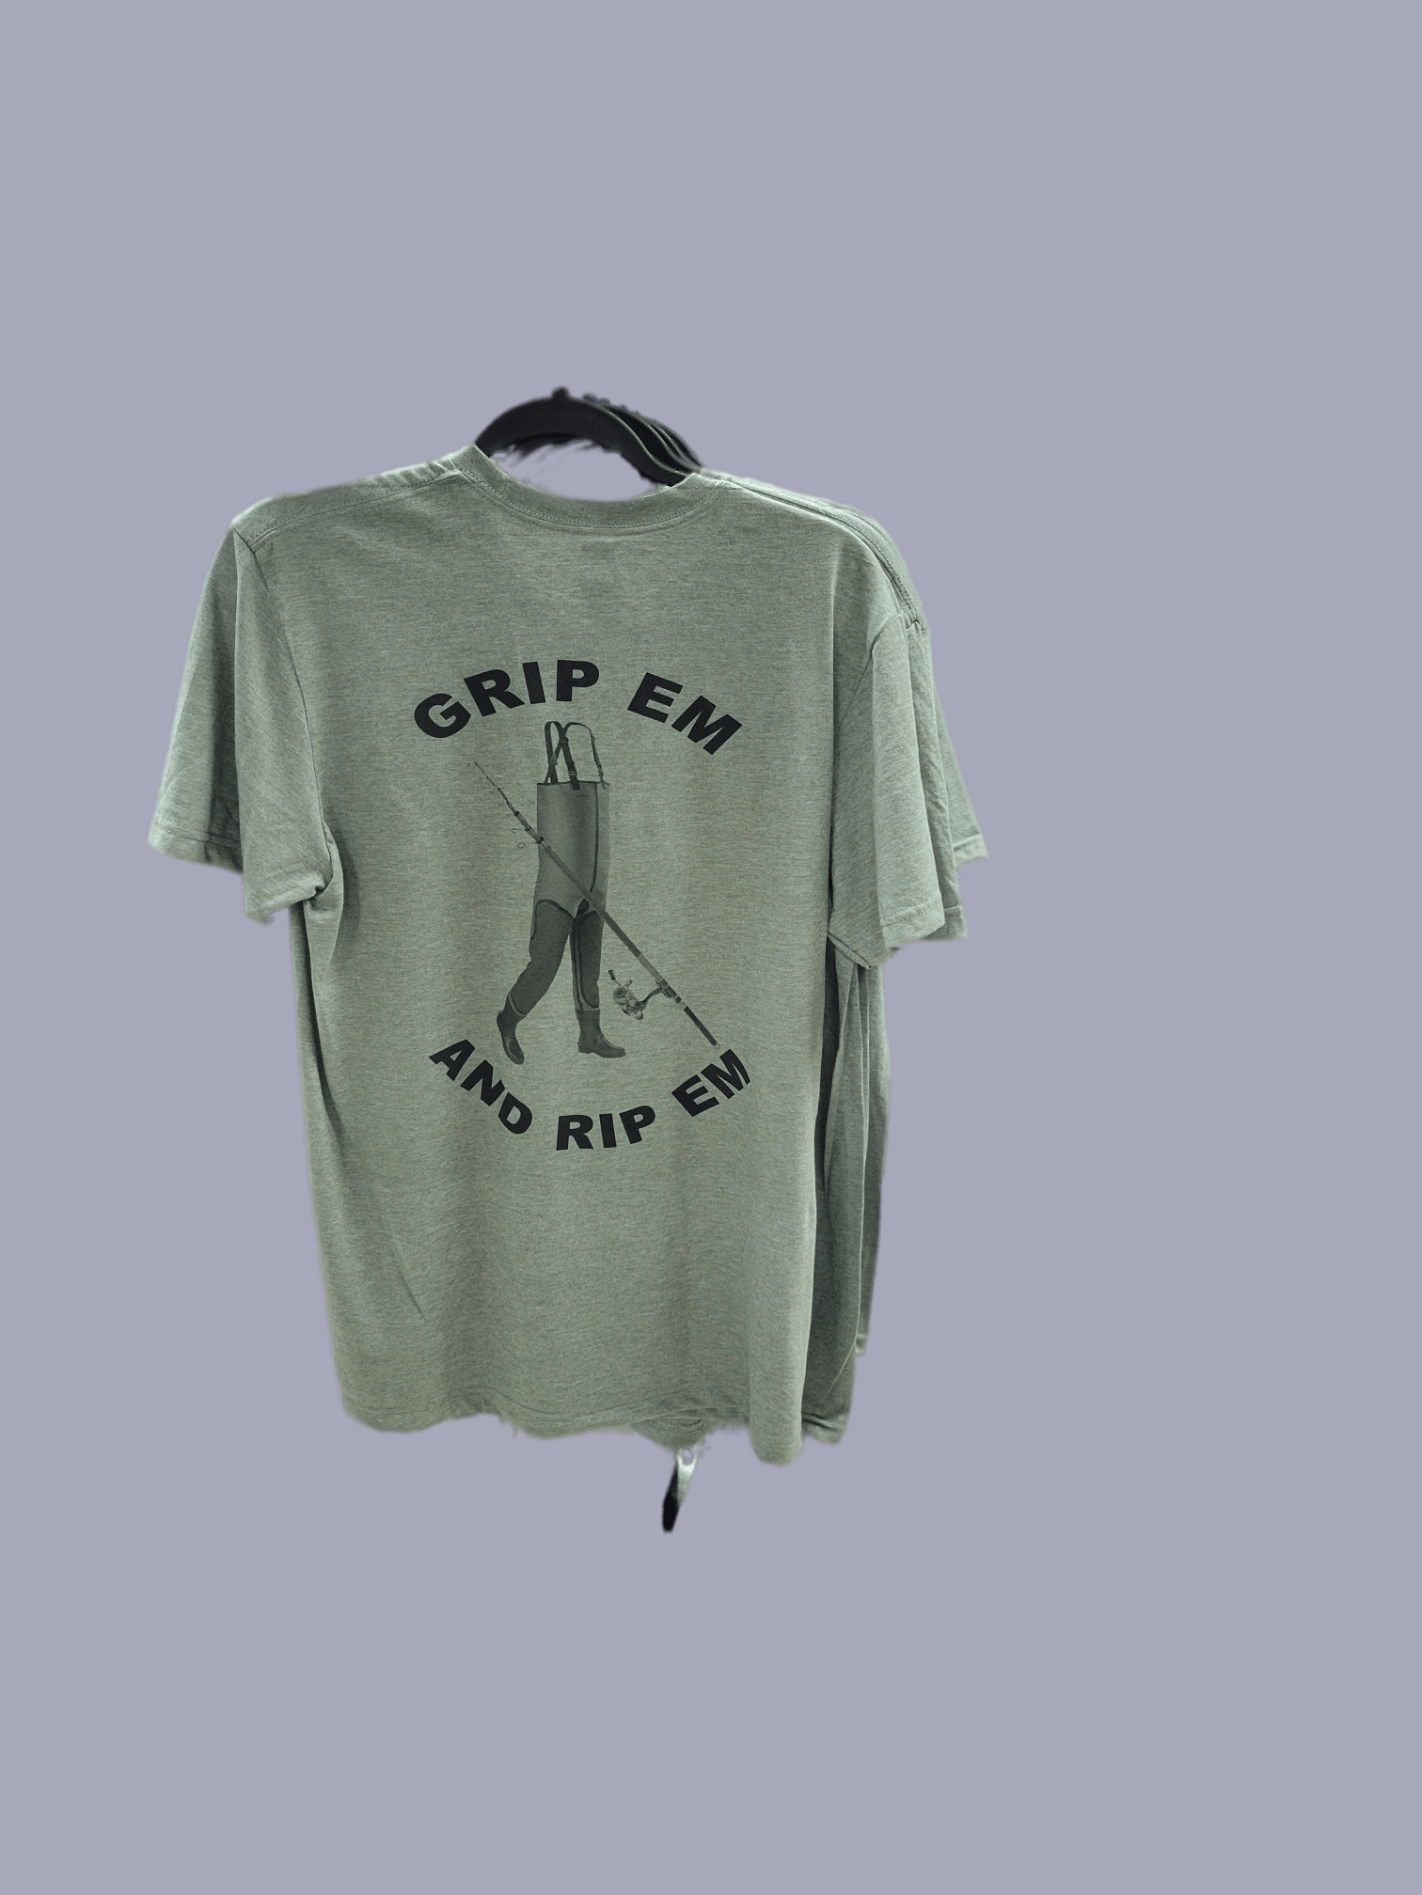 Grip Em and Rip Em